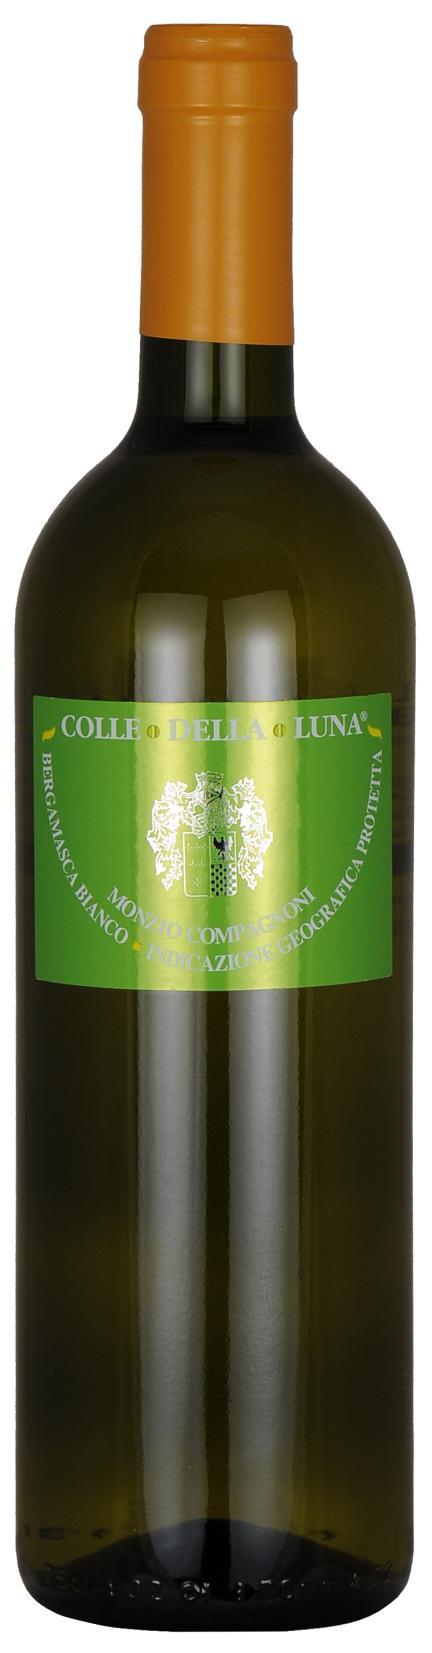 Colle della Luna Bergamasca Bianco 2014 Denominazione: Bergamasca Bianco Indicazione Geografica Protetta Uve: 80% Chardonnay, 20% Pinot Grigio. Produzione annua: 10.